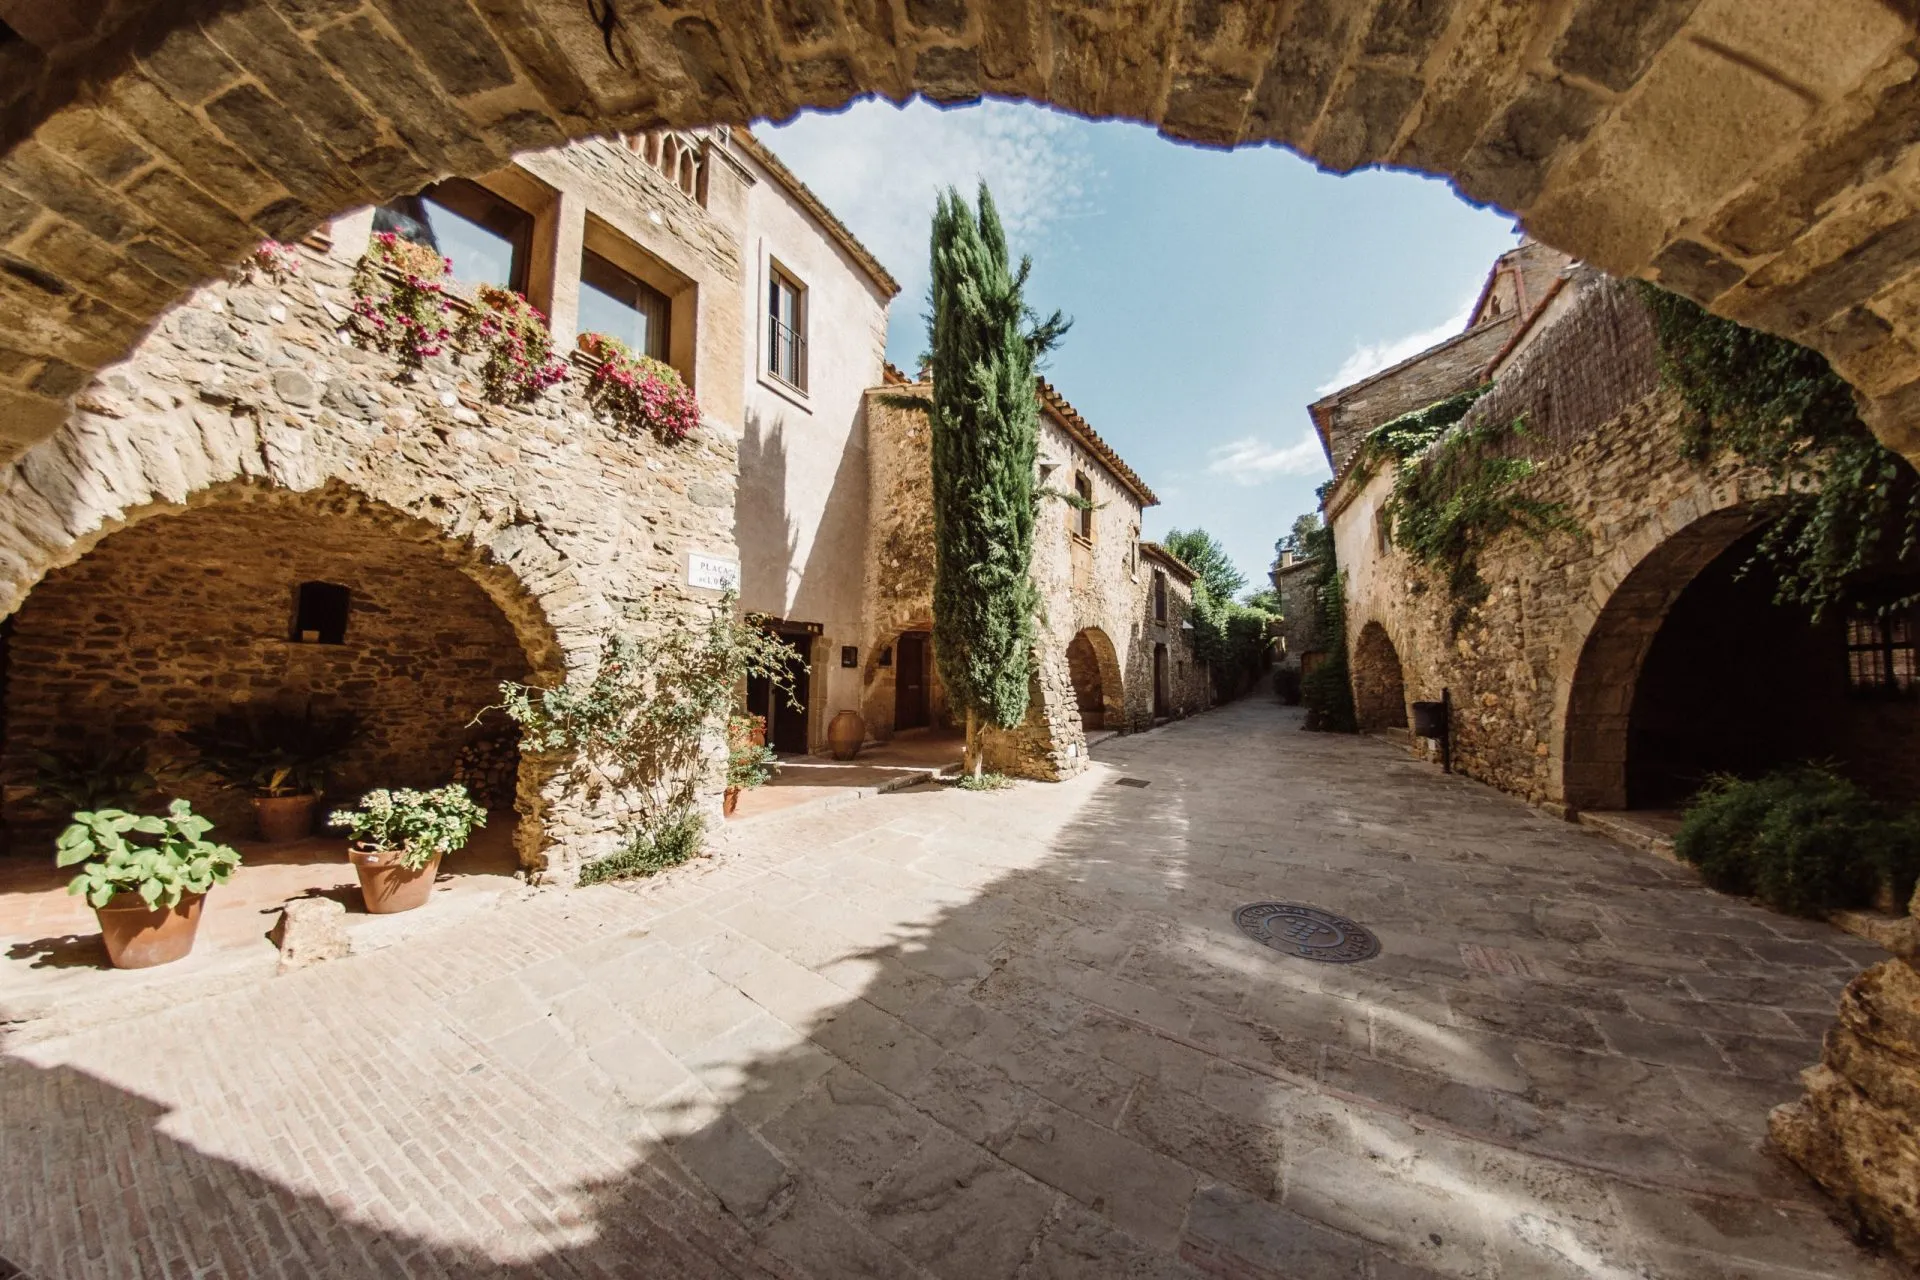 Middelalder- og turistbyen Monells på Costa Brava, nær Girona, i det nordlige Catalonien, Spanien.